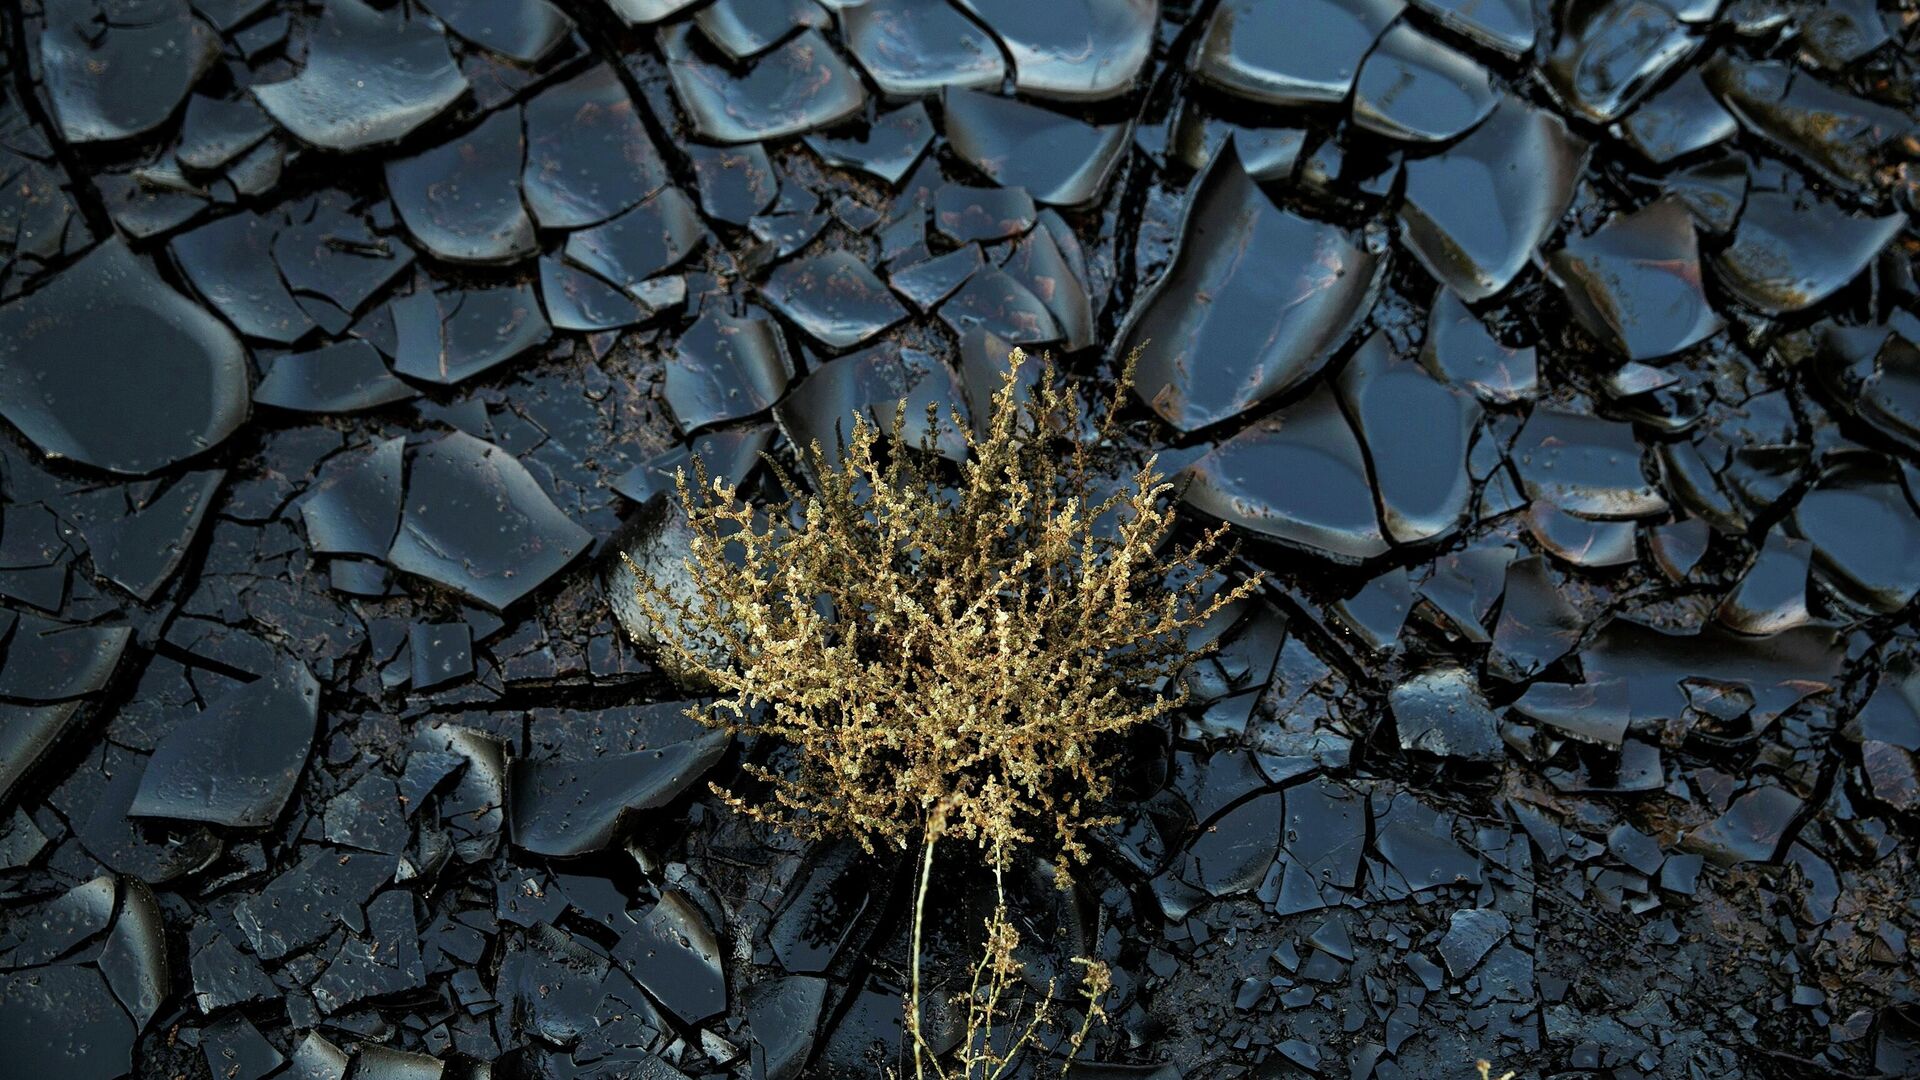 Un área contaminada causada por un derrame de petróleo en la reserva del desierto de Evrona, cerca de la ciudad turística de Eilat, en el Mar Rojo, Israel, el 10 de diciembre de 2014 - Sputnik Mundo, 1920, 11.08.2021